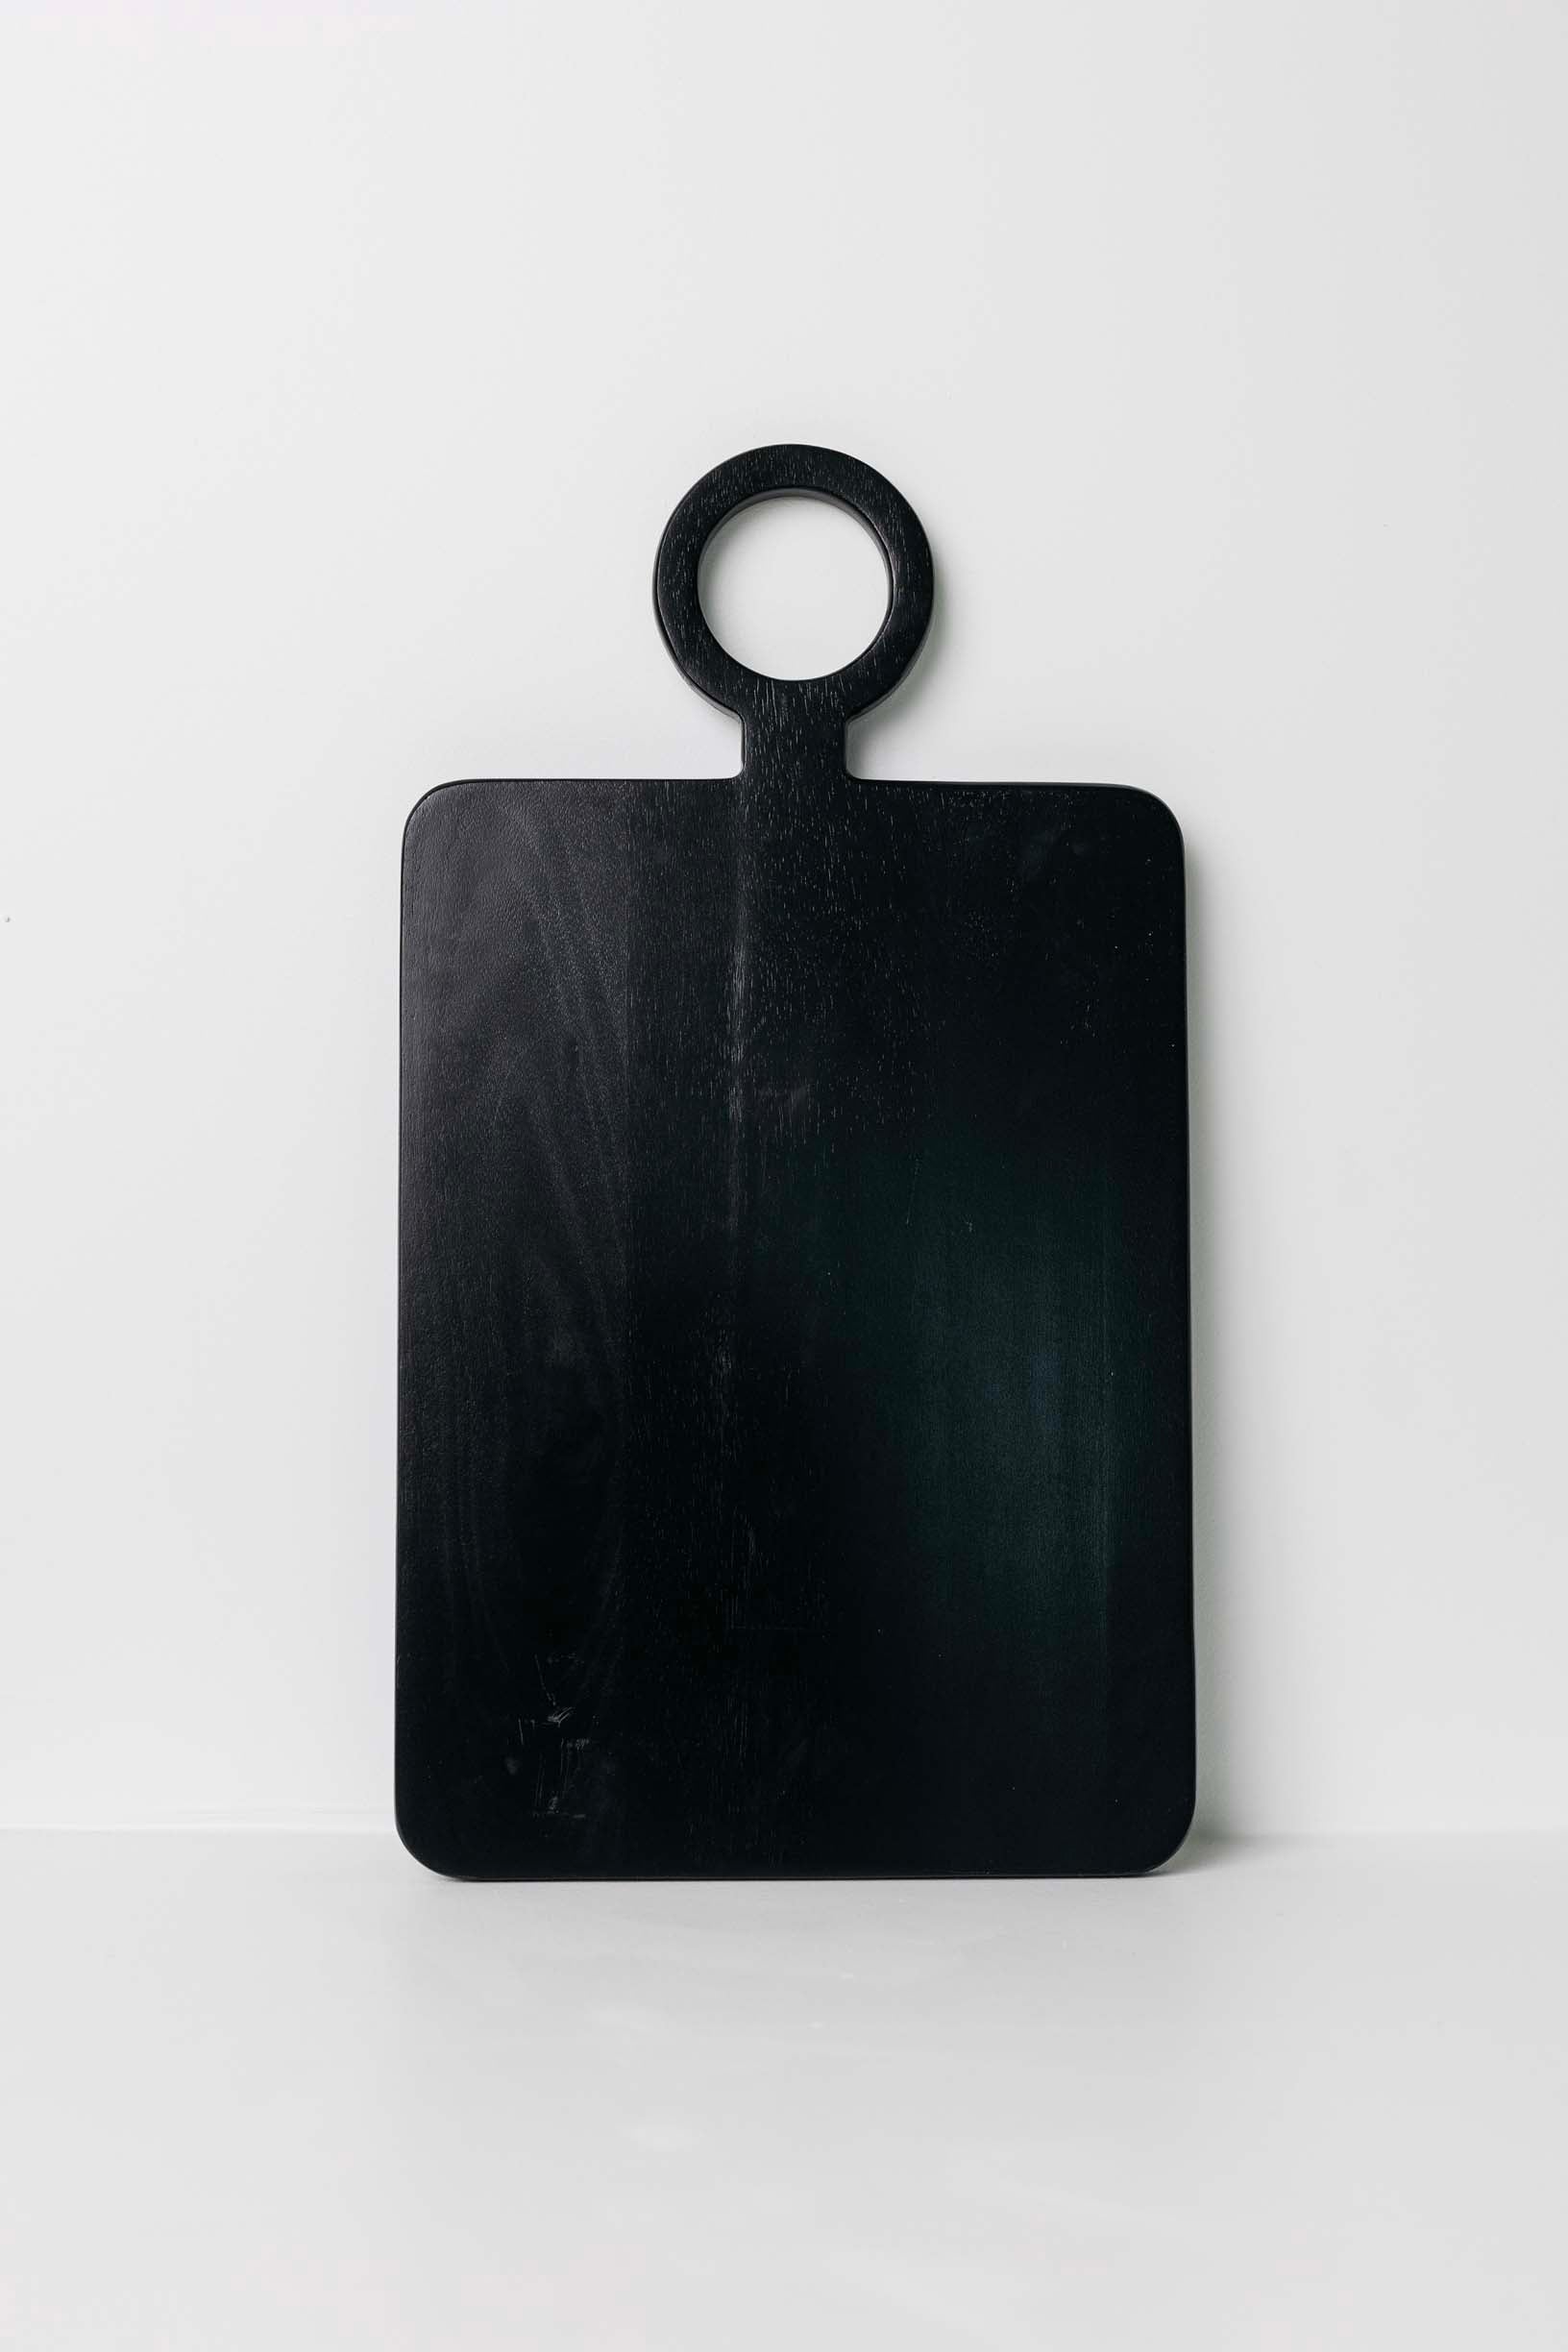 Sarafina Board - Black - 3 Sizes